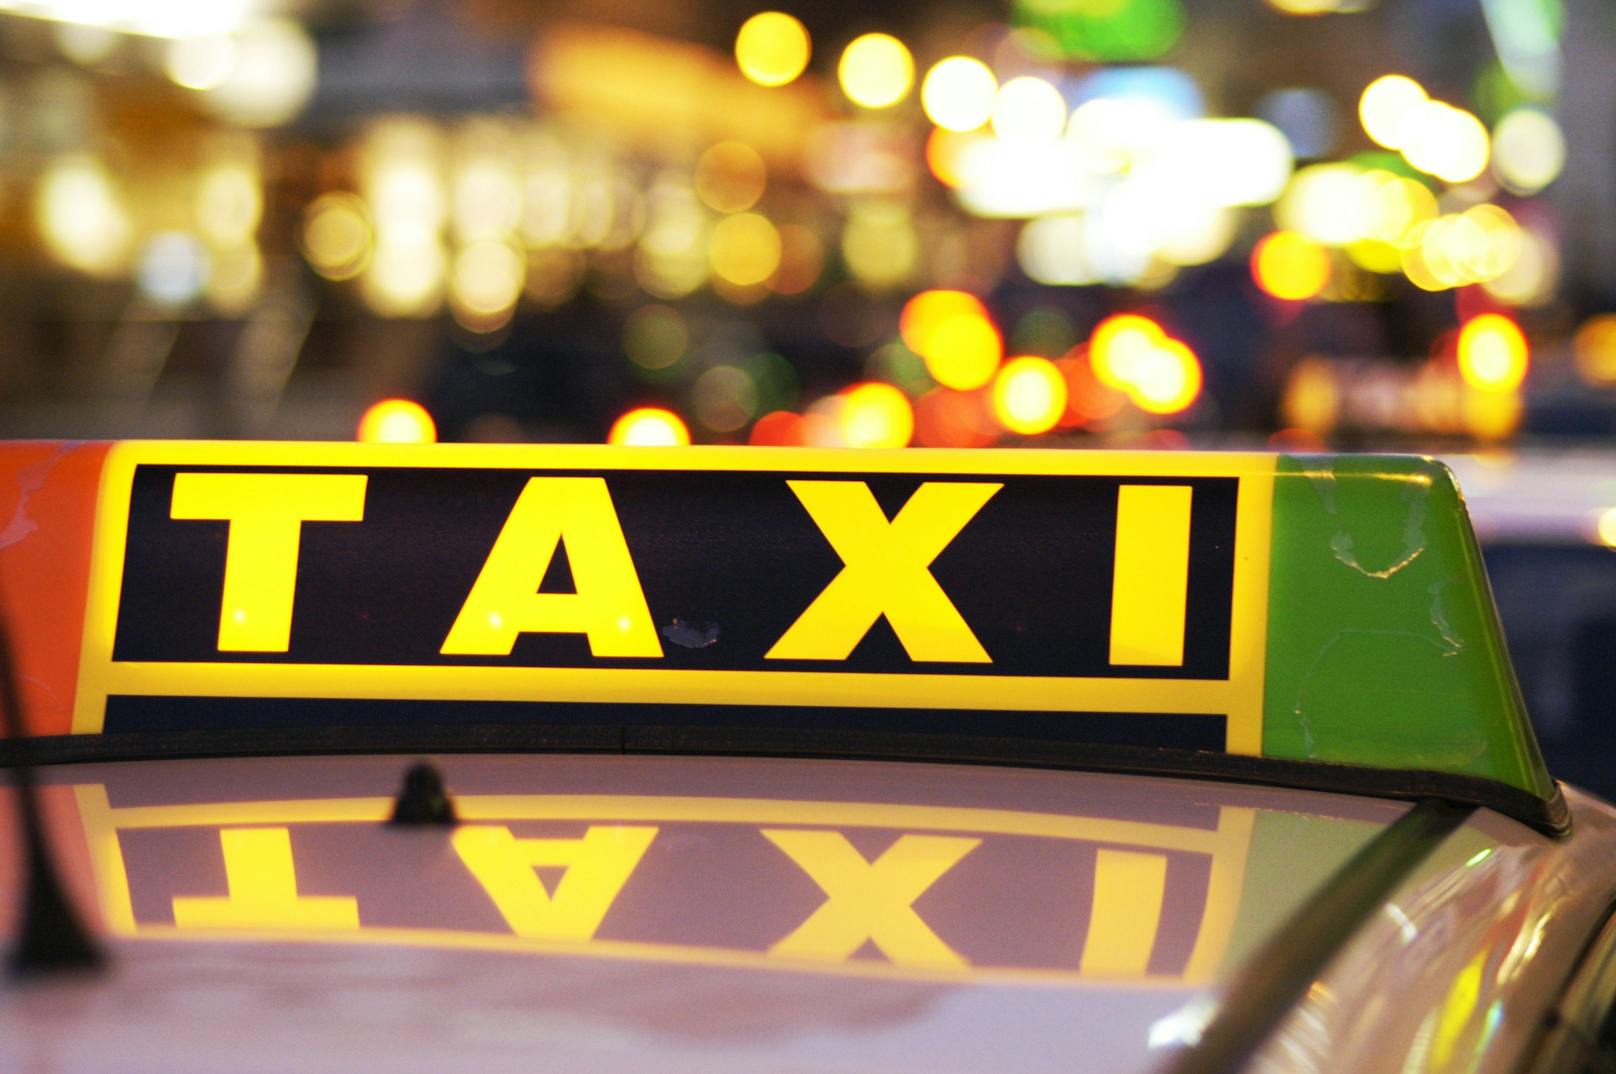 Streit um Preis: Taxilenker schlägt Fahrgast bewusstlos